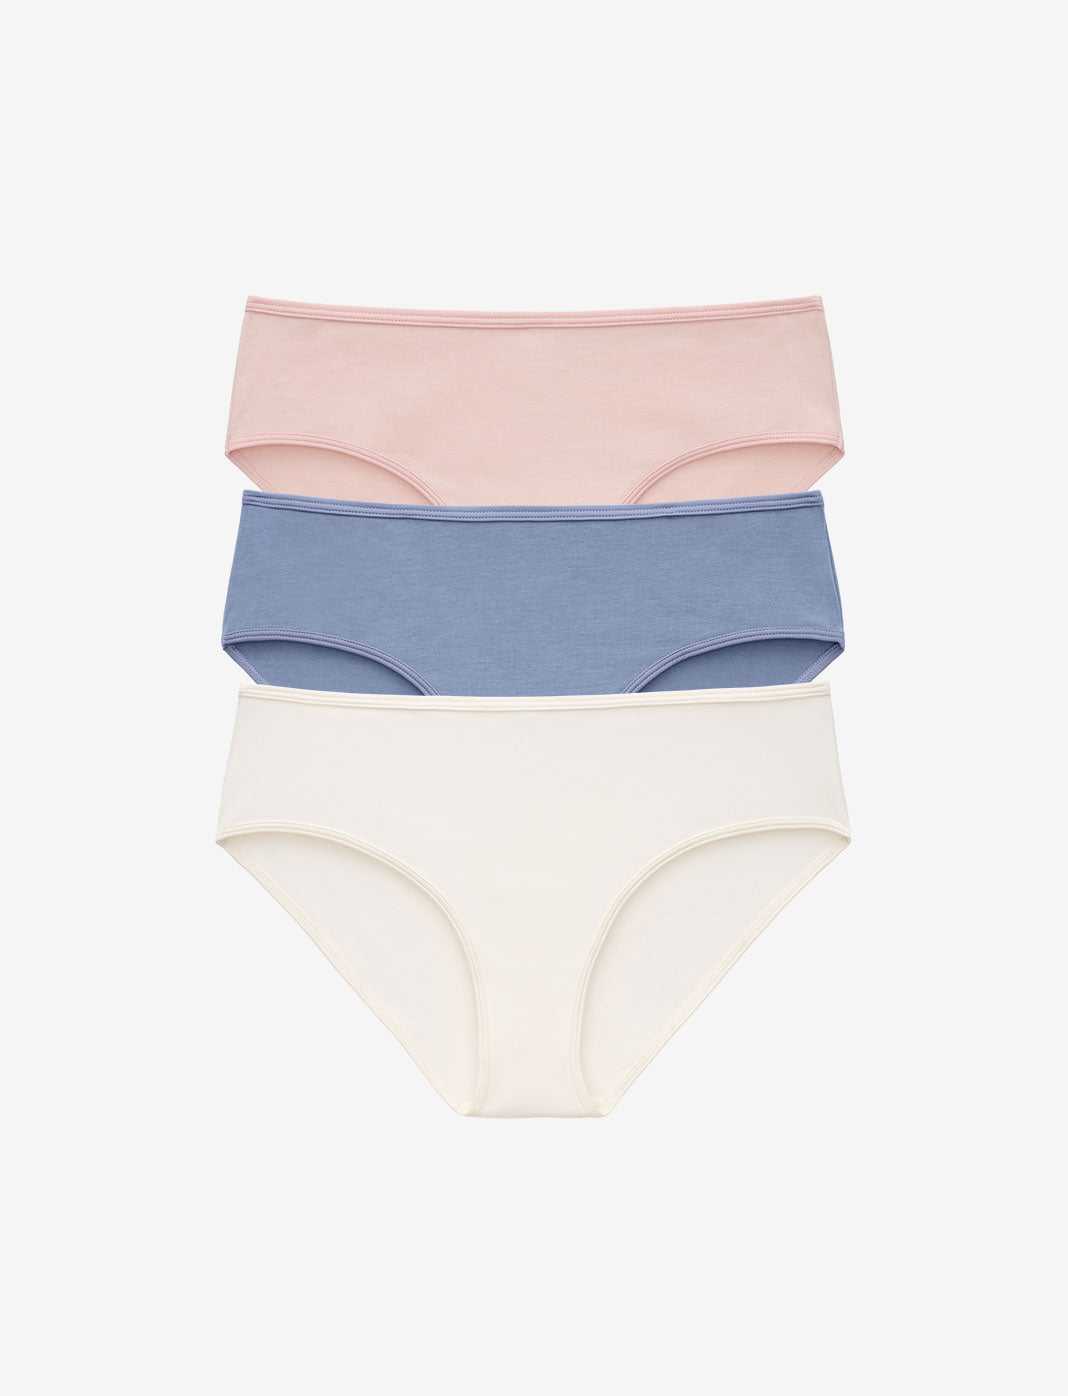 Hanes® Ultimate Breathable Cotton Tagless® Bikini Underwear, 8